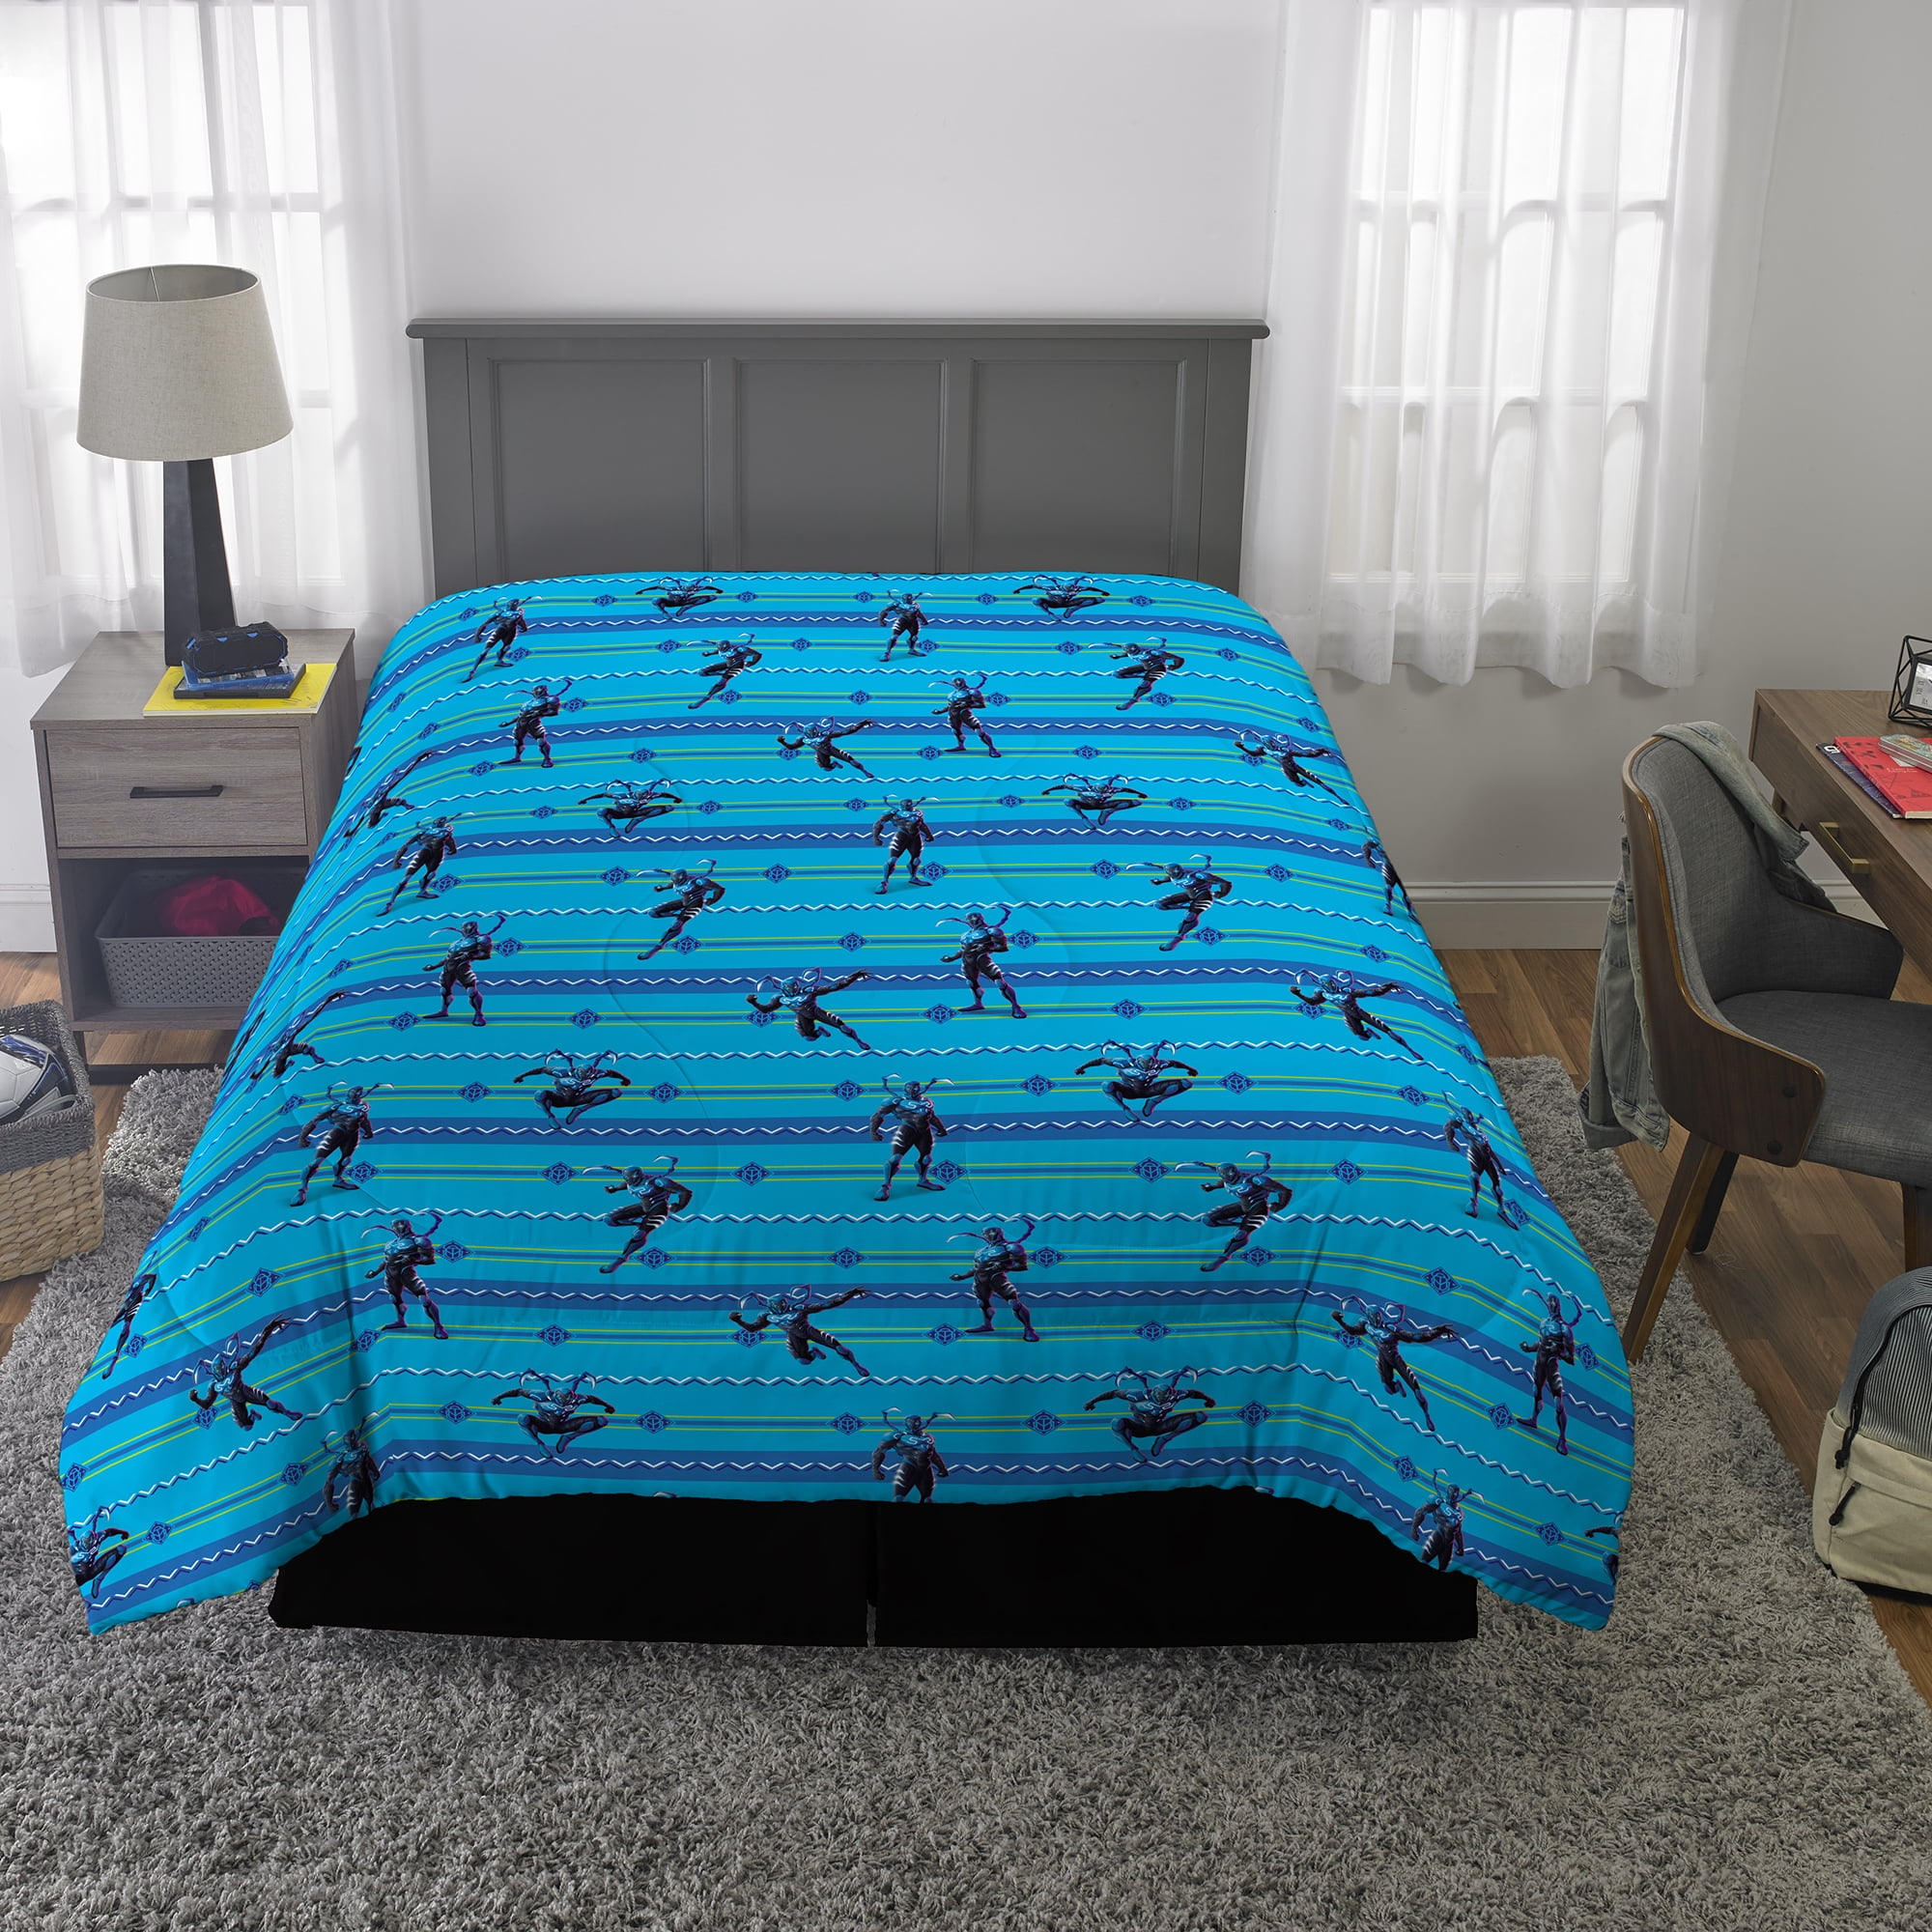 Blue Bunny Hangers - Kids Bedroom Accessories – Little English